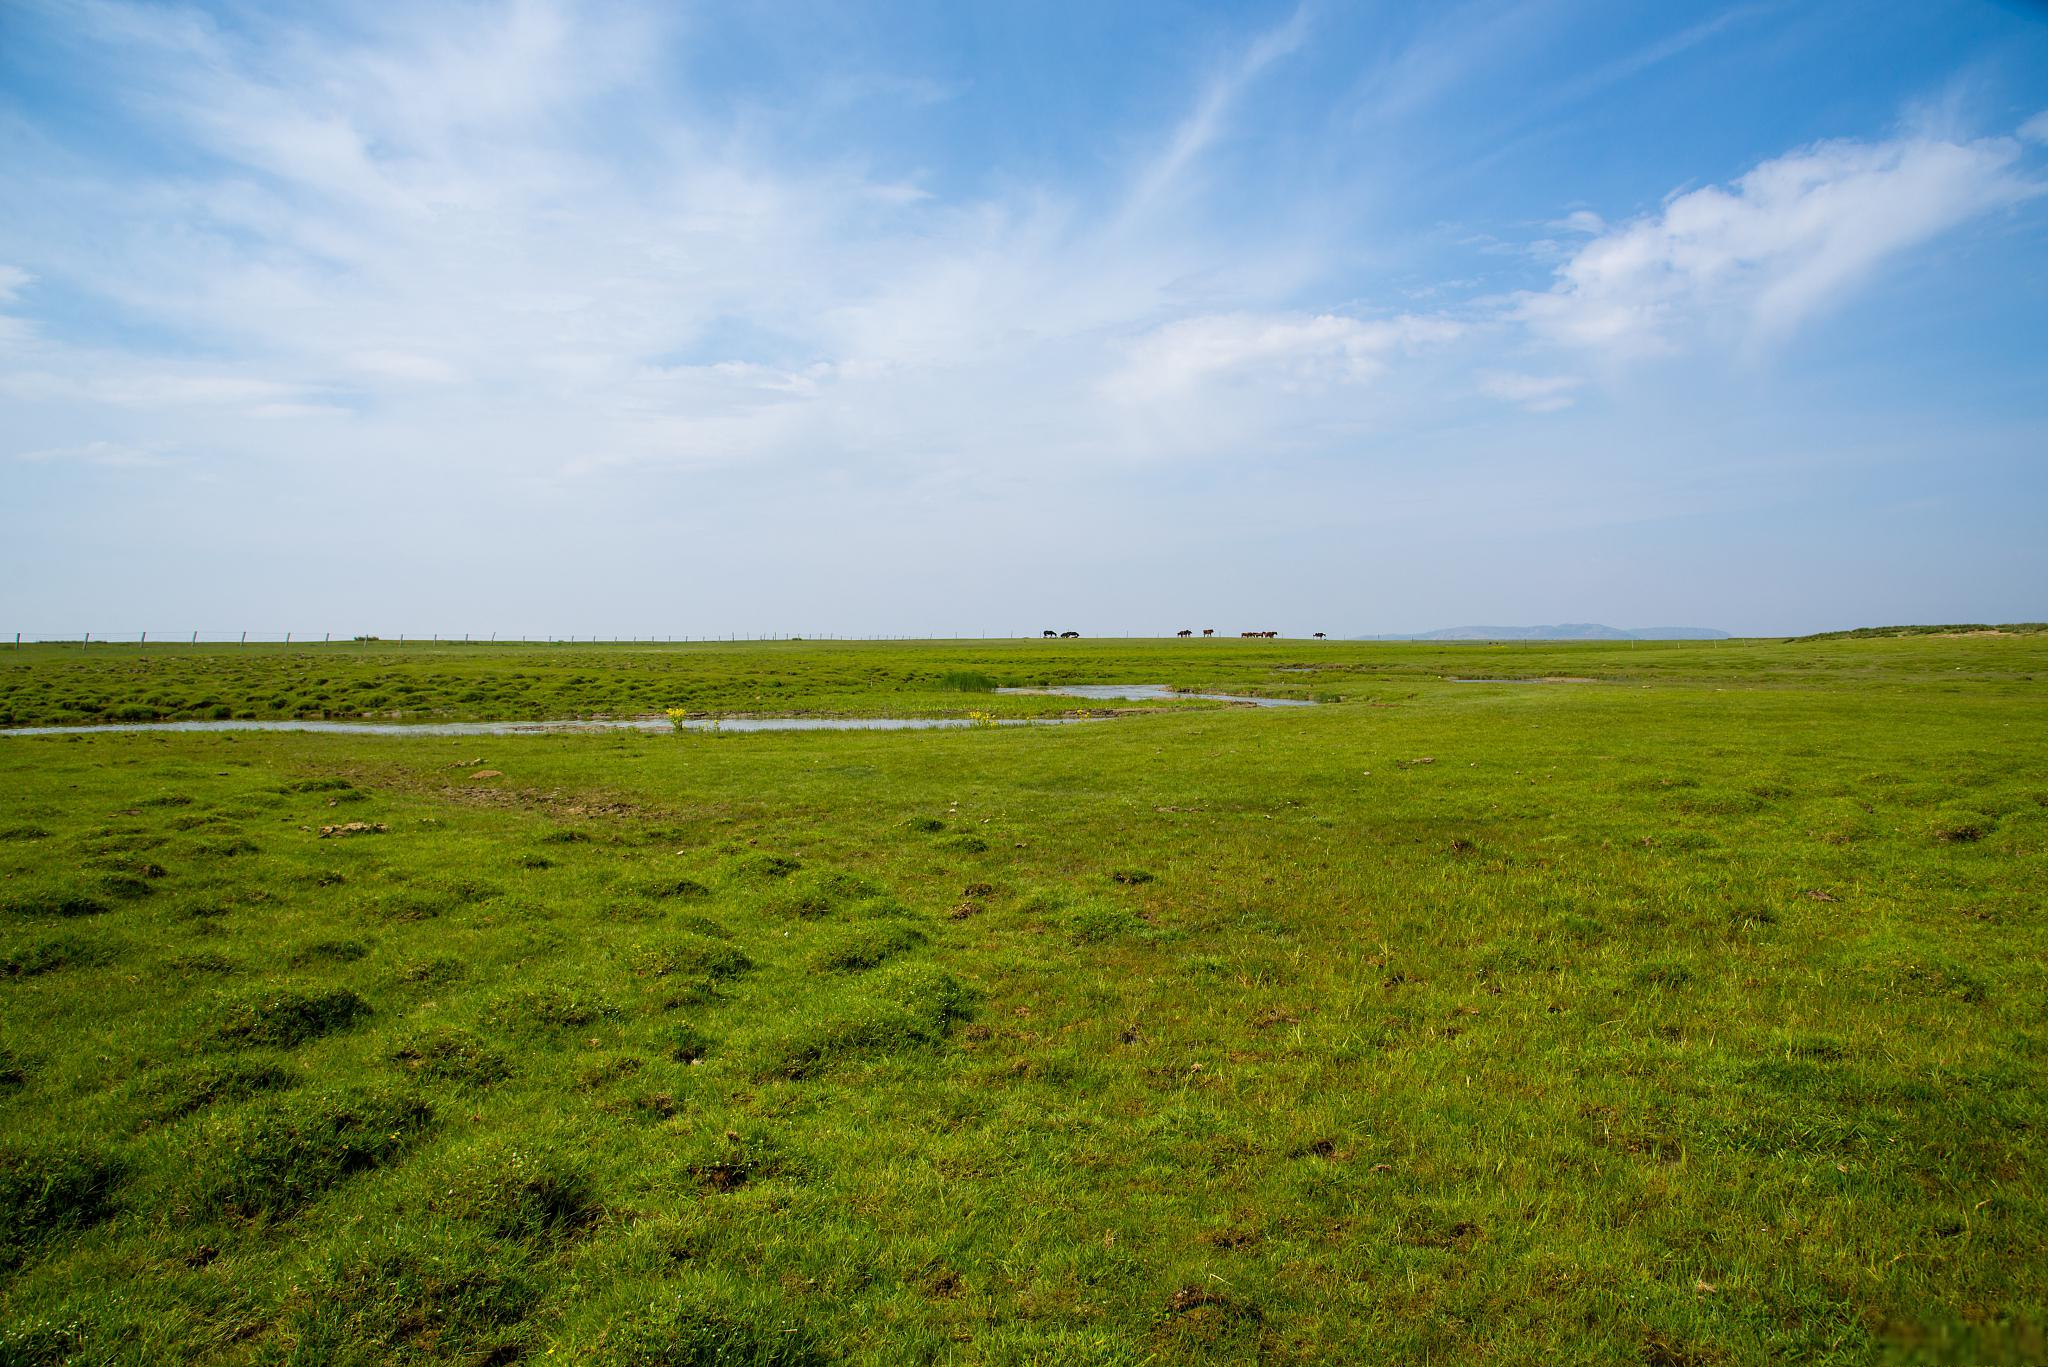 鄱阳湖大草原景区,南方最大的草原 鄱阳湖大草原景区,位于江西省北部